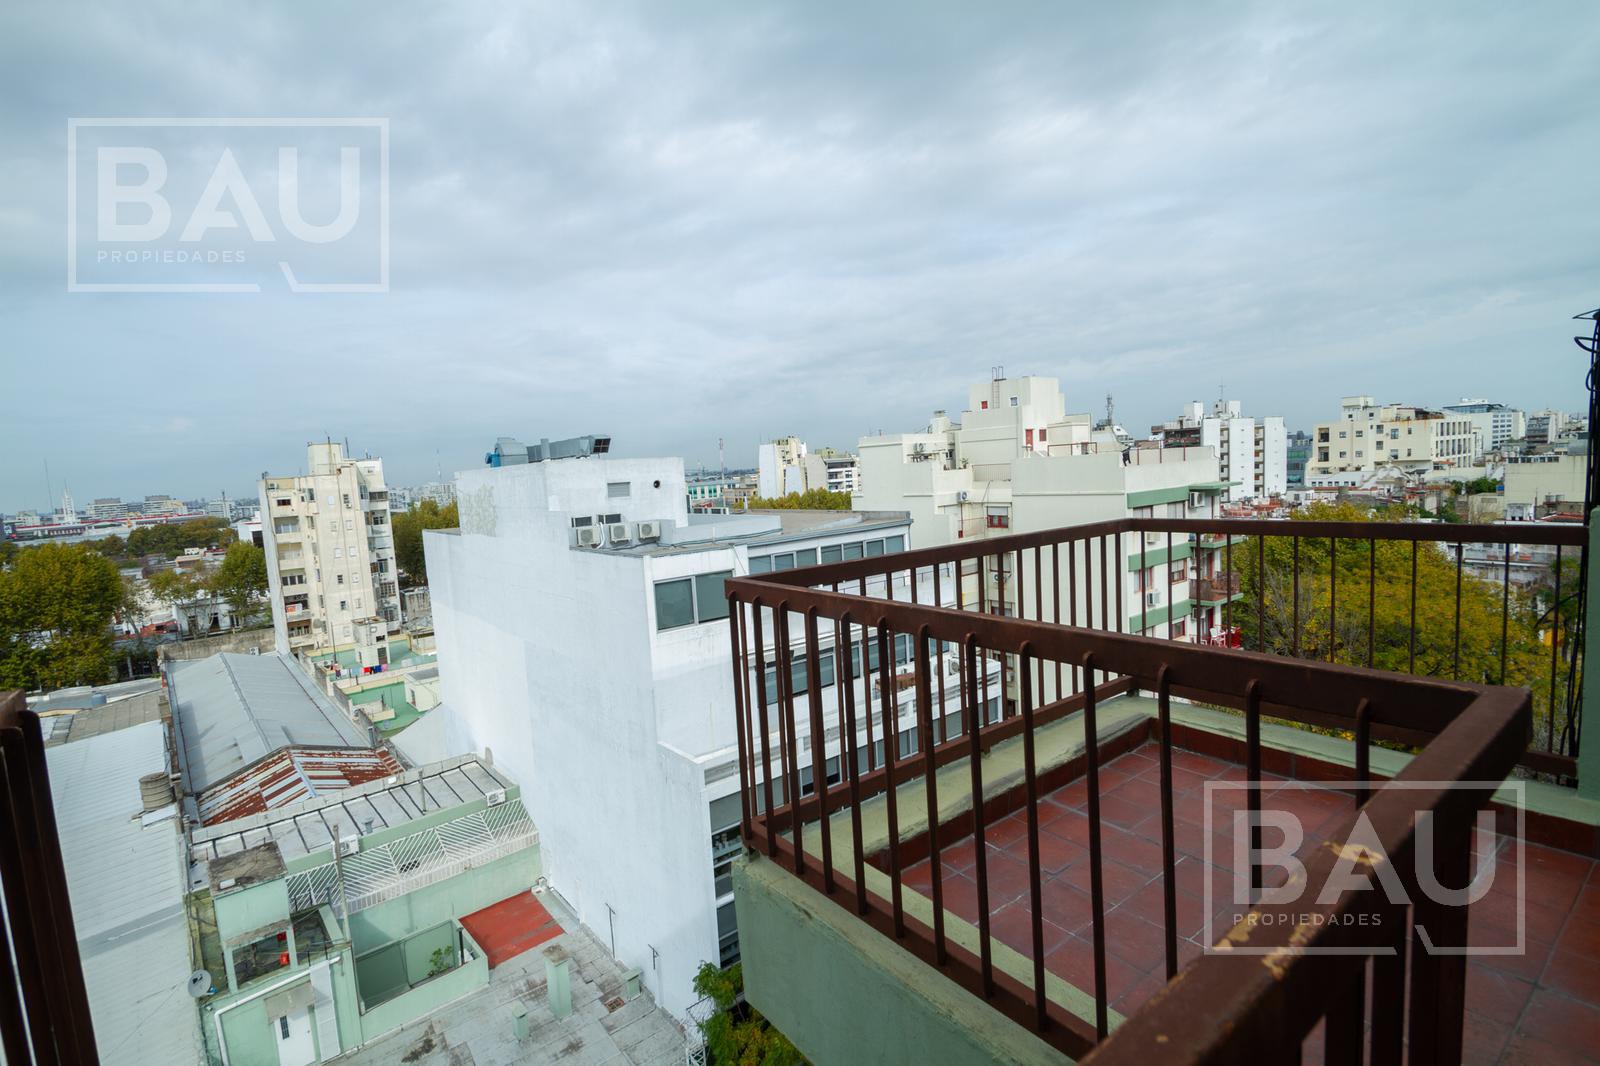 BAU PROPIEDADES: Impecable departamento de 2 ambientes con balcón terraza, Parque Patricios!